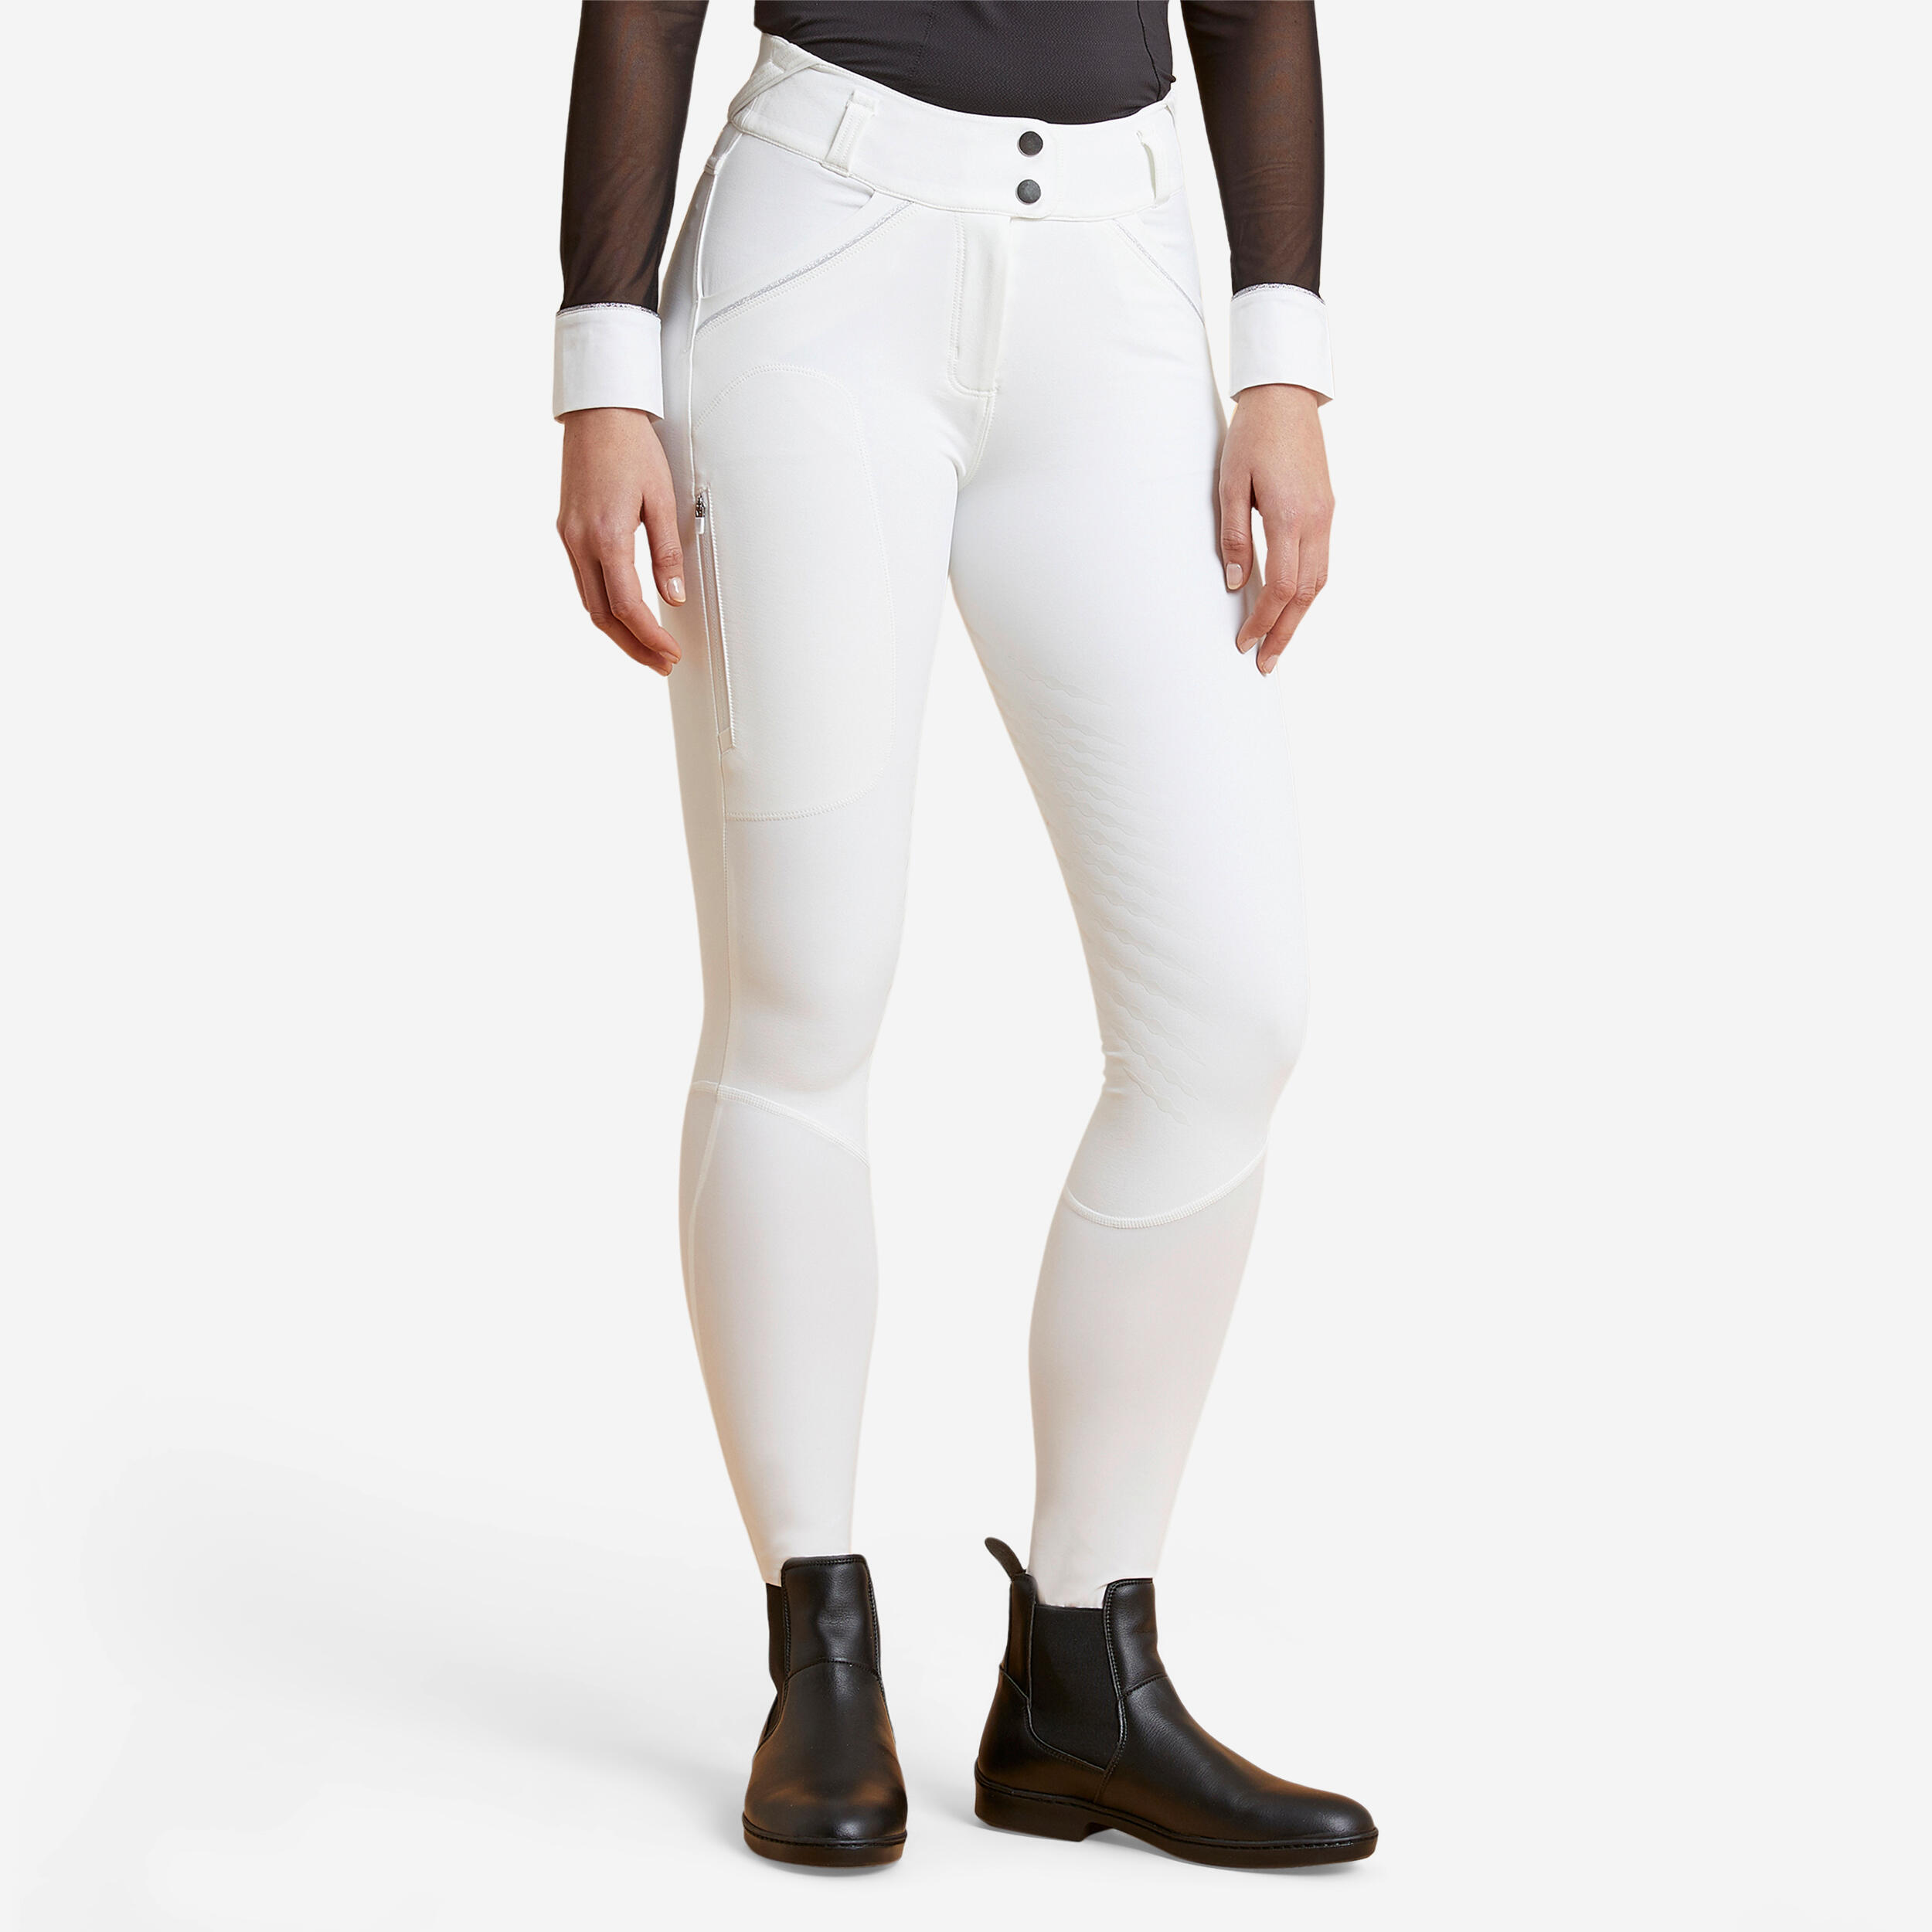 Pantaloni da Equitazione HKM by Reiterladen24 4057052274183 140 Colore: Bianco 